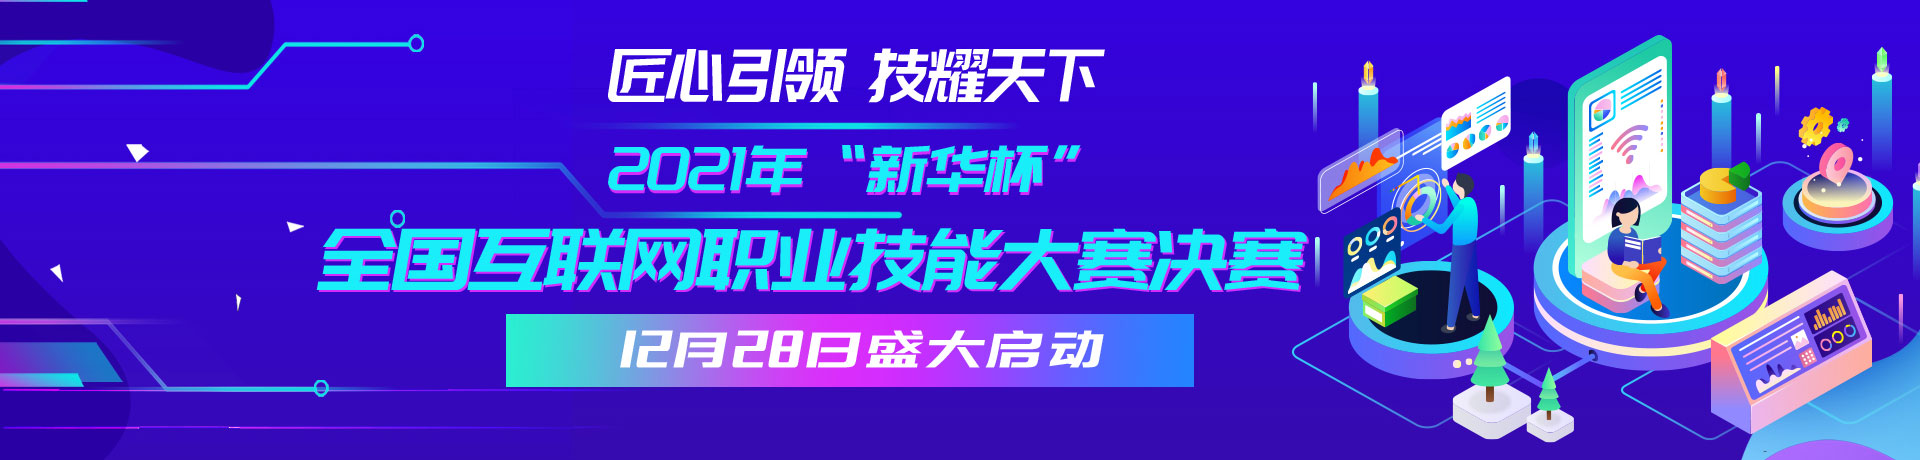 2021年“新华杯”全国互联网职业技能大赛决赛